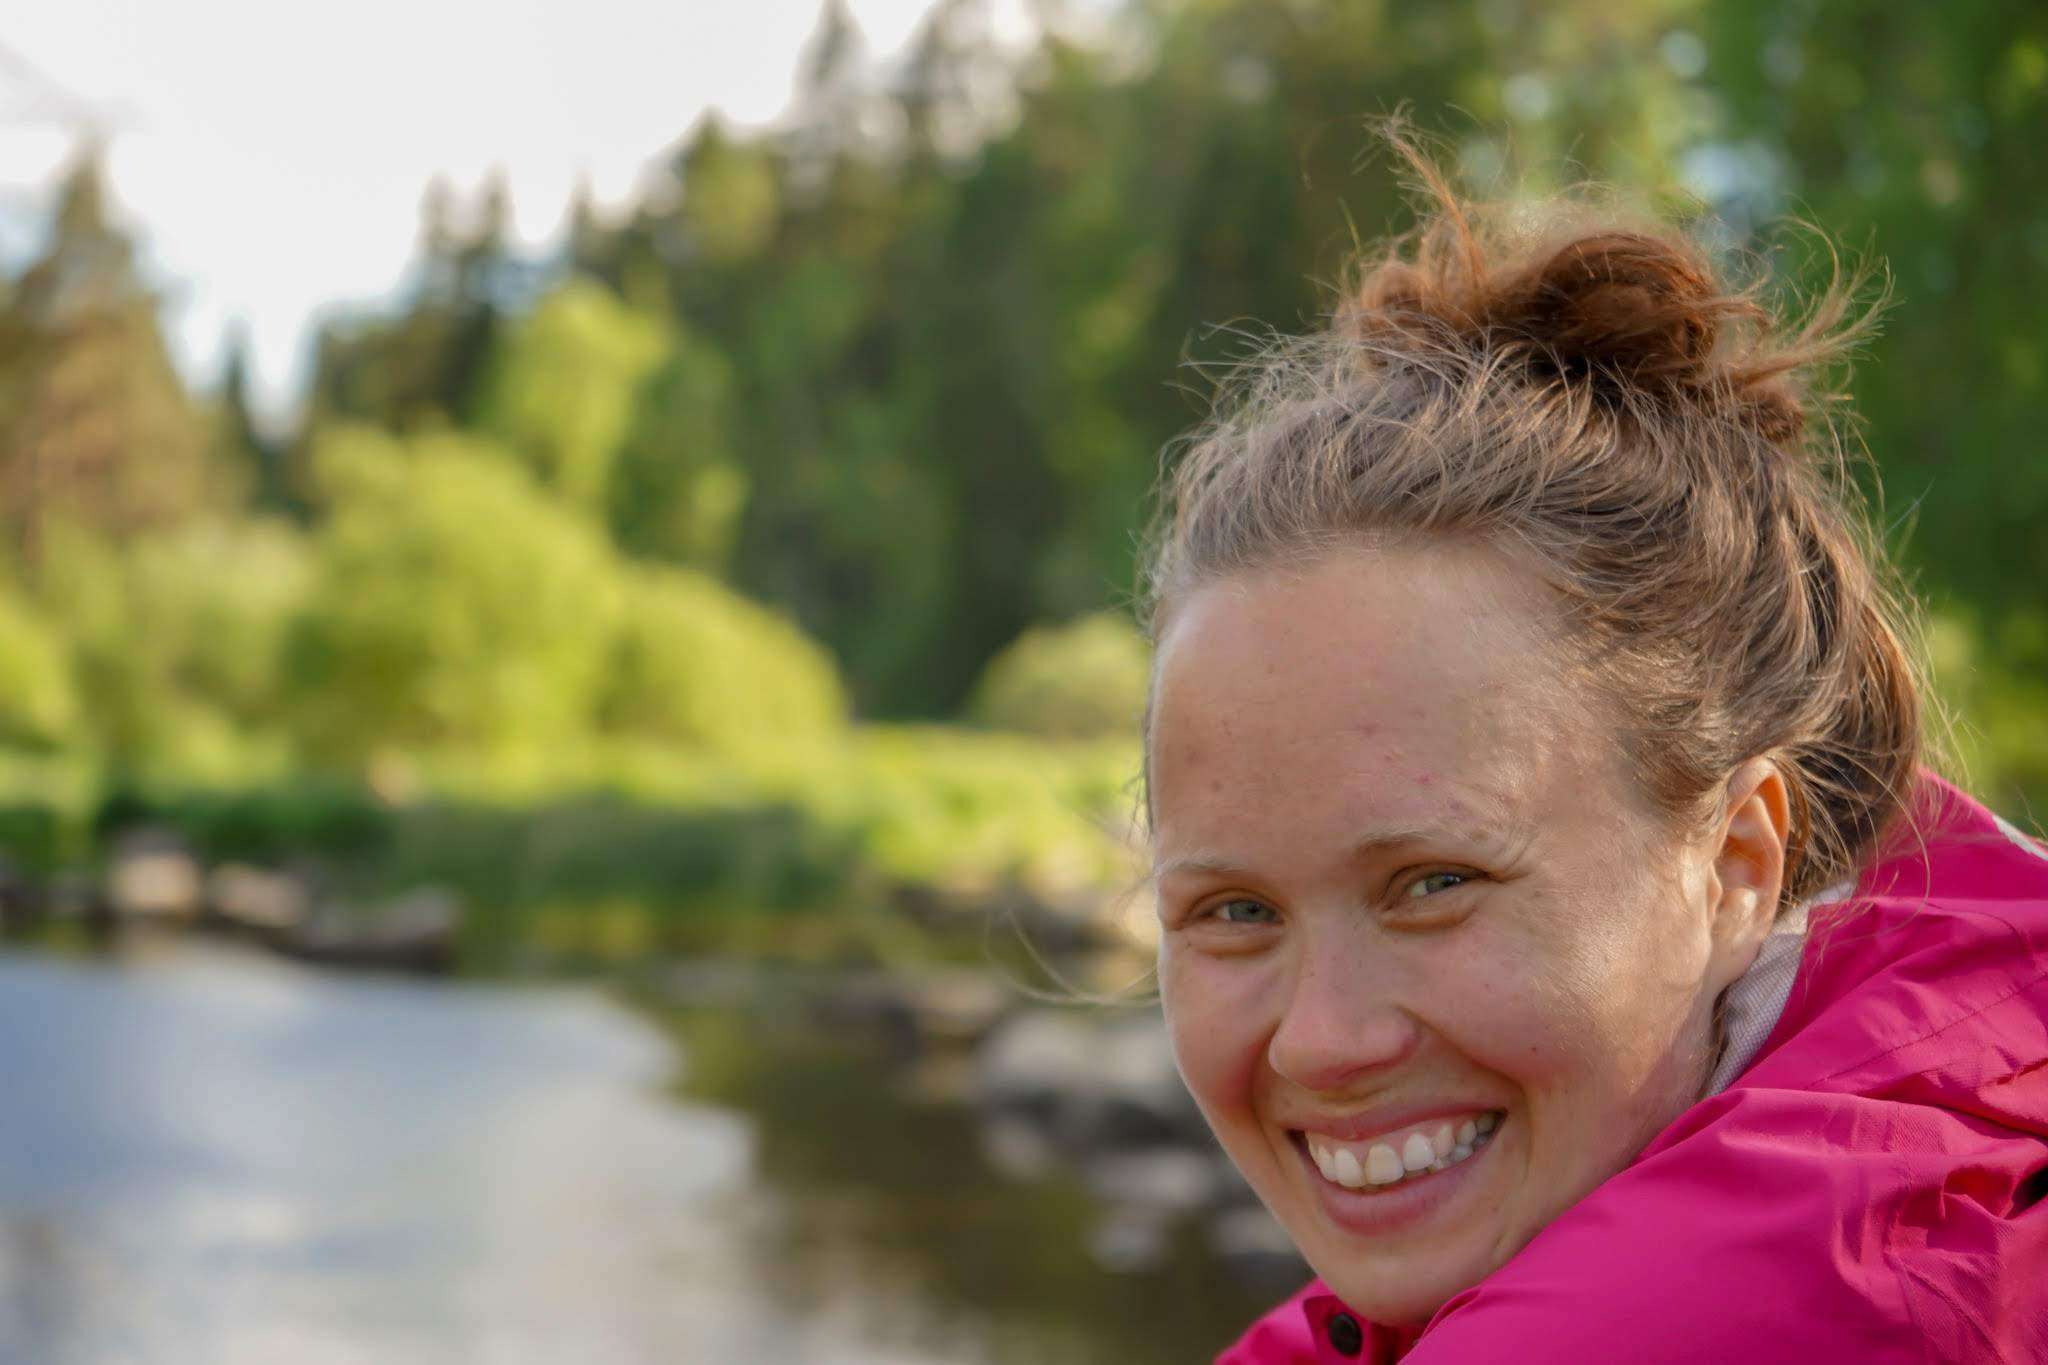 Anna Paul on vau.fi:n kätilöbloggari, jonka kirjoitukset käsittelevät äitiyttä ja raskautta voimaannuttavalla tavalla. Kuva: Jani Mertanen